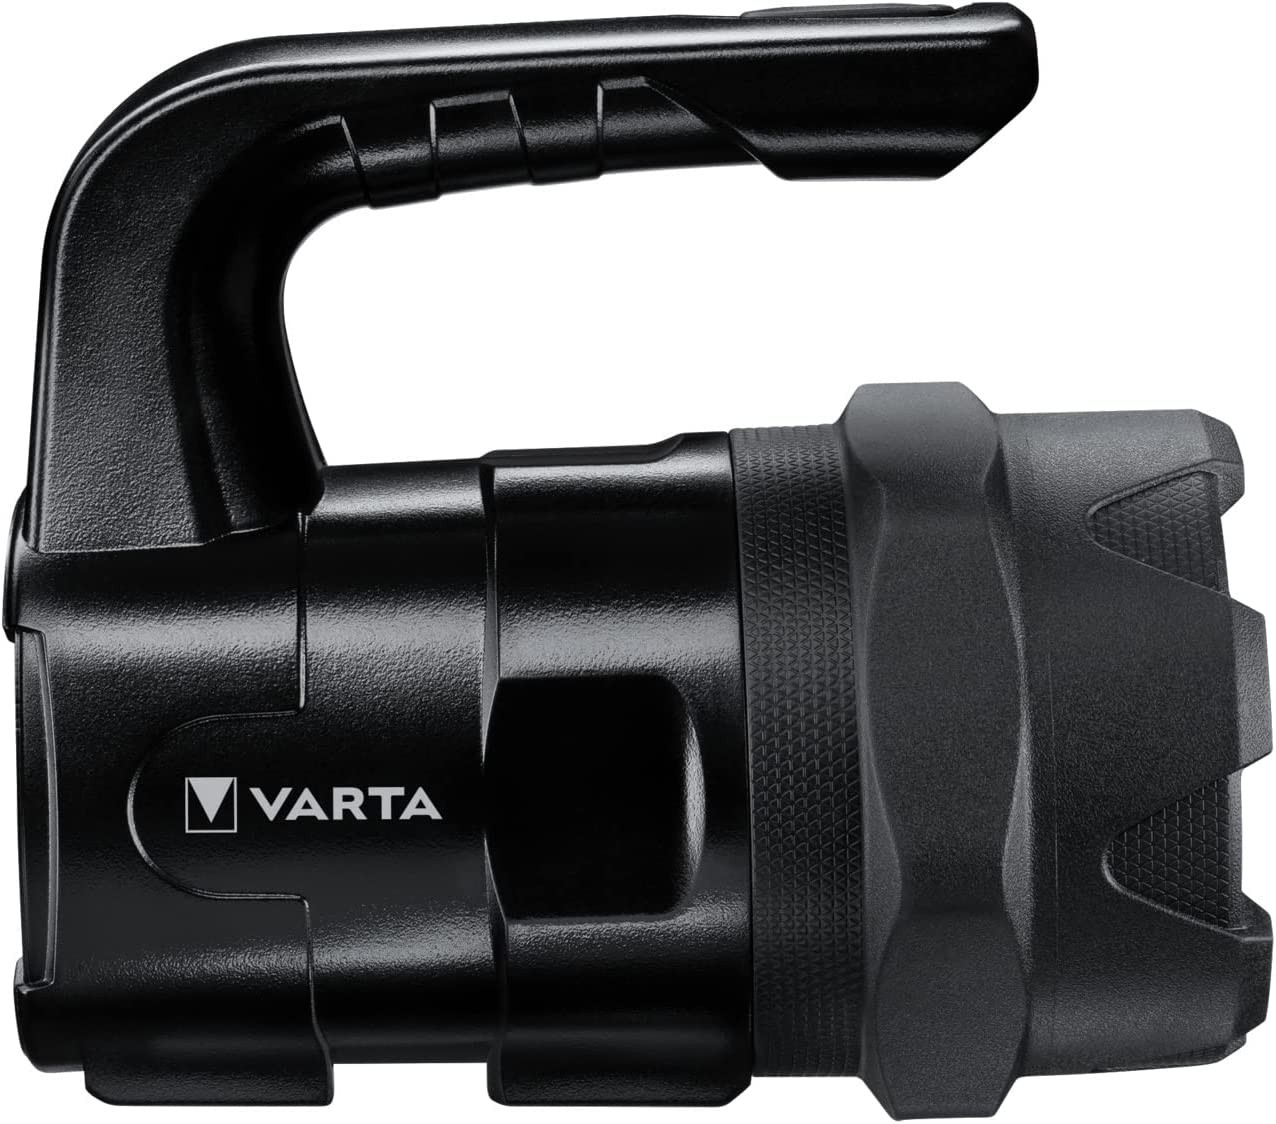 Светодиодный фонарик Varta Indestructible BL20 Pro отзывы - изображения 5